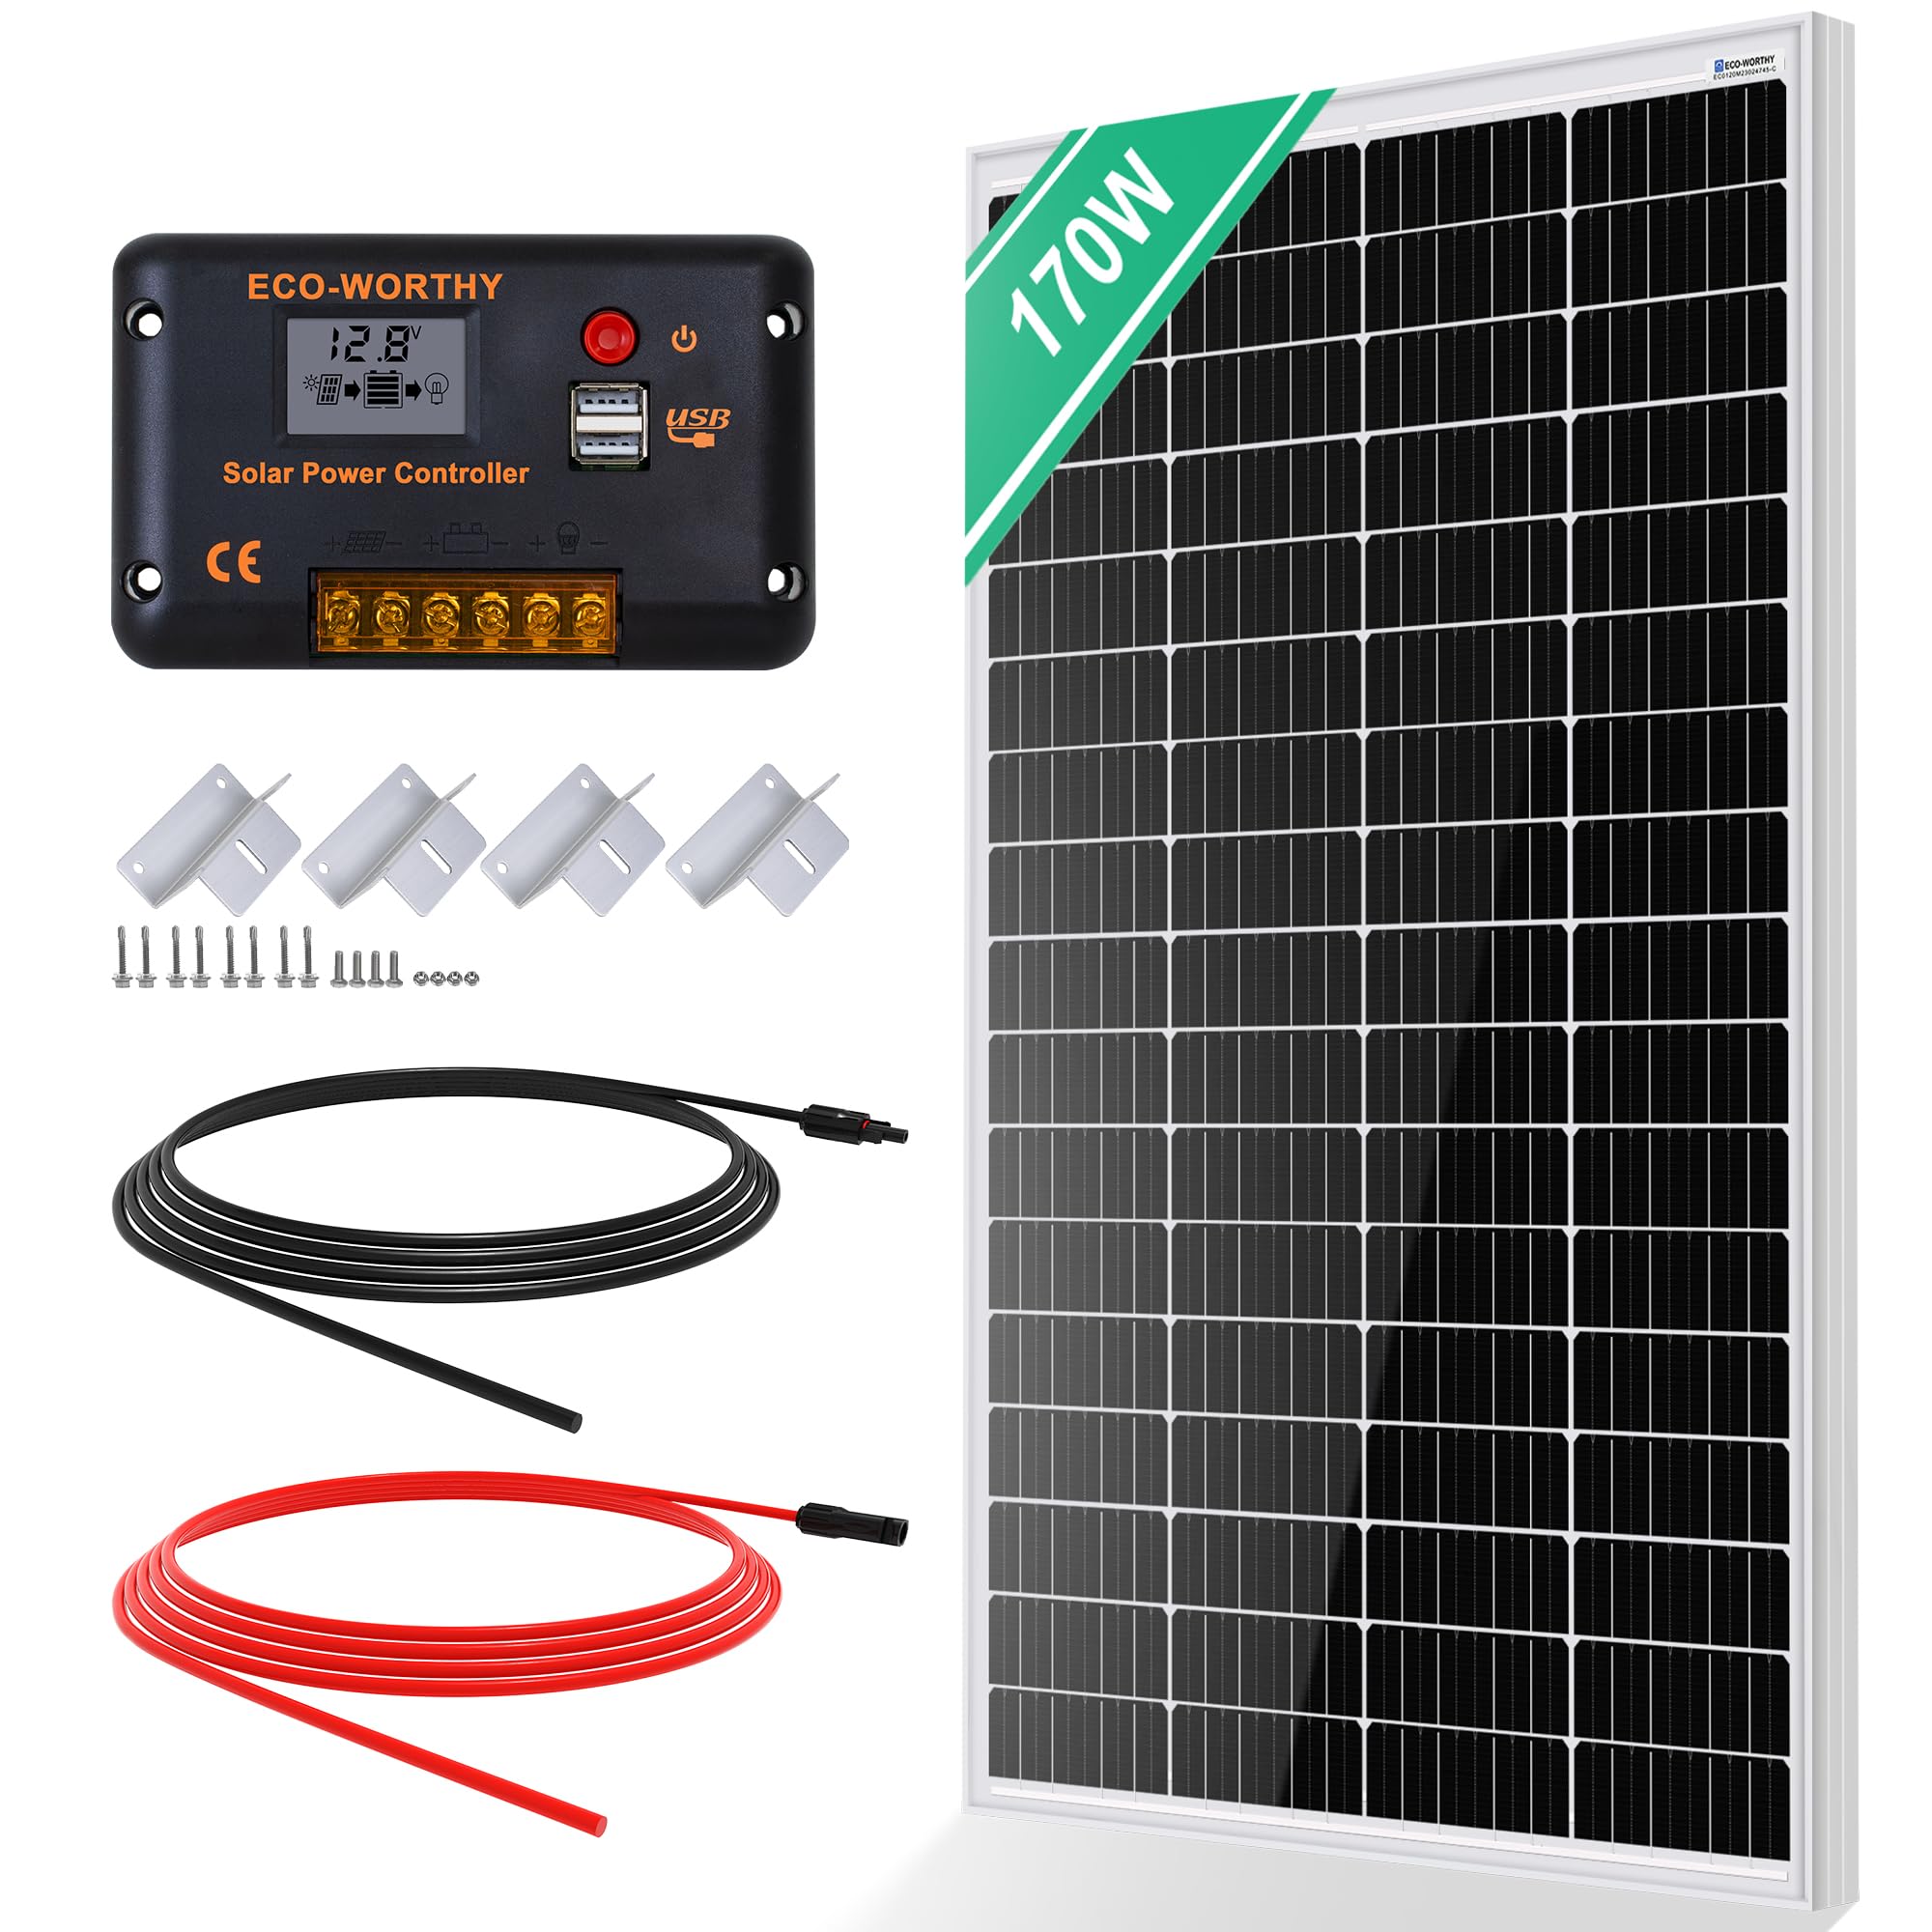 ECO-WORTHY Monokristallines Solarpanel Solarzelle kit 170W enthält 12V Solarmodul + 30 A Solarladeregler + 5m Solarkabel + Z-Befestigungsklammern für Wohnmobil,Wohnwagen,Haushalt und Off-Grid-System